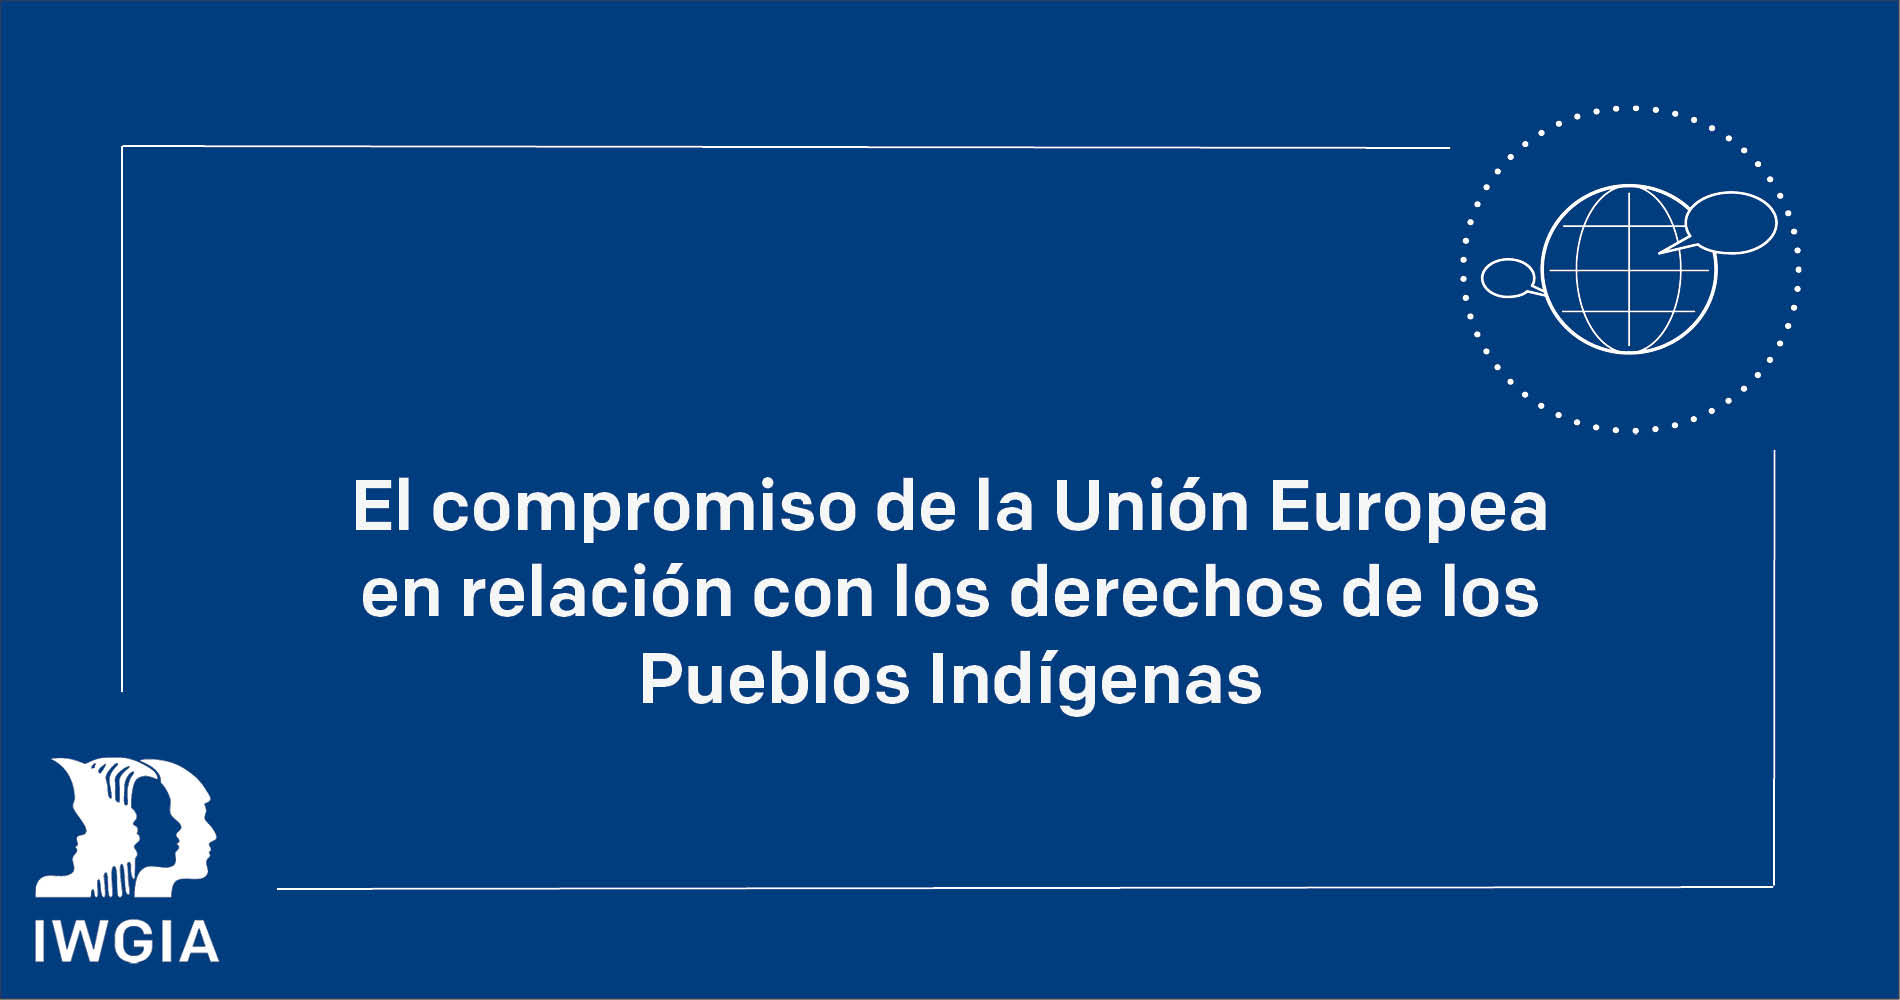 El compromiso de la Unión Europea en relación con los derechos de los Pueblos Indígenas